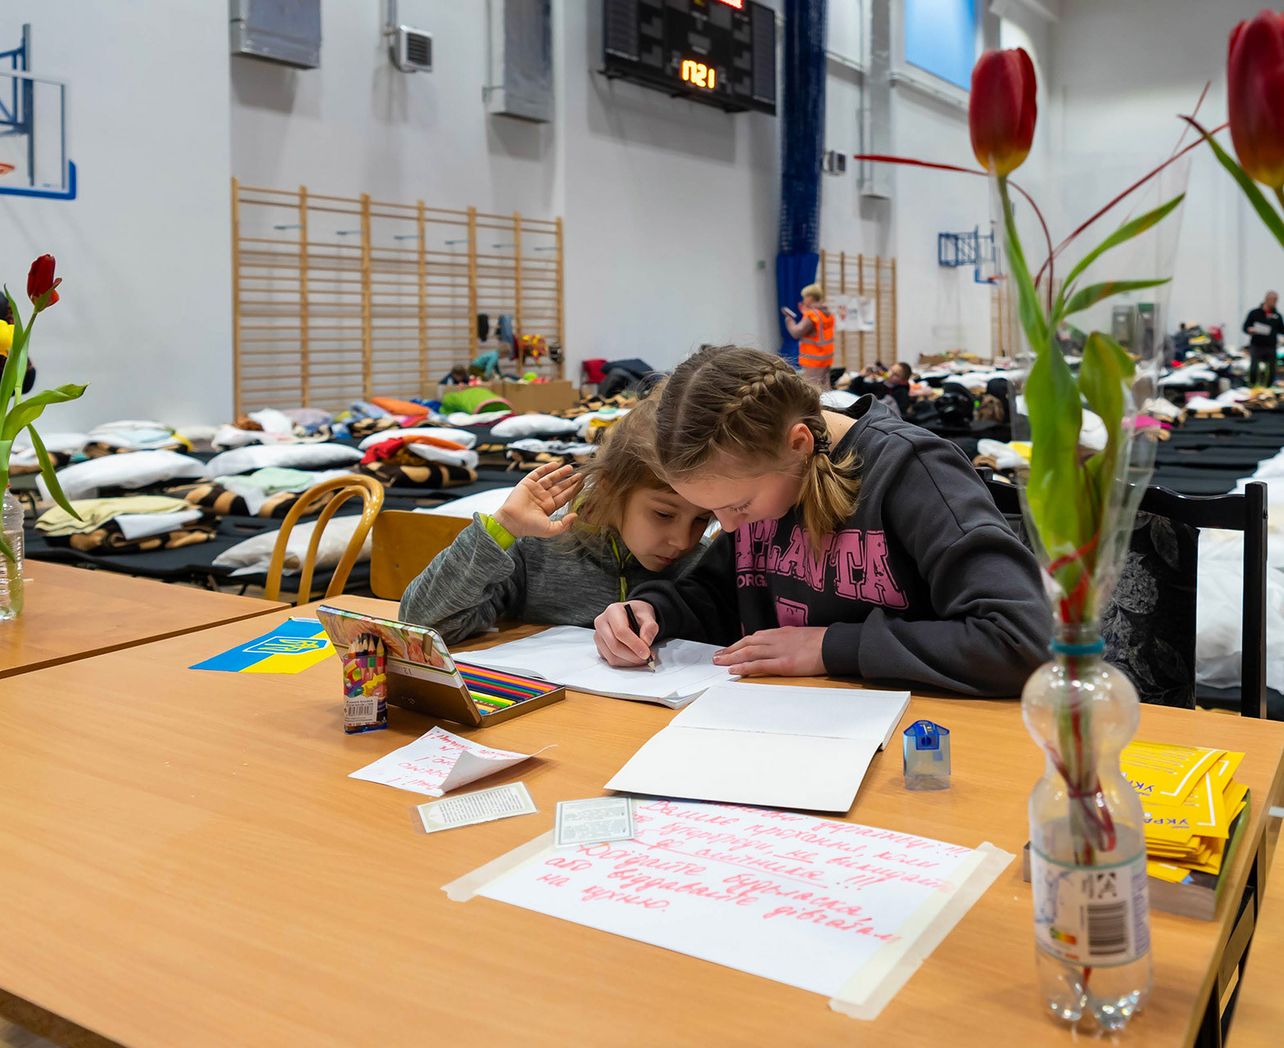 Le gymnase de Przemysl en Pologne a été transformé en centre d’accueil d’urgence pour les réfugiés ukrainiens au printemps 2022. Les bénévoles de notre partenaire PKPS organisent l’accueil et s’assurent de la dignité des lieux.